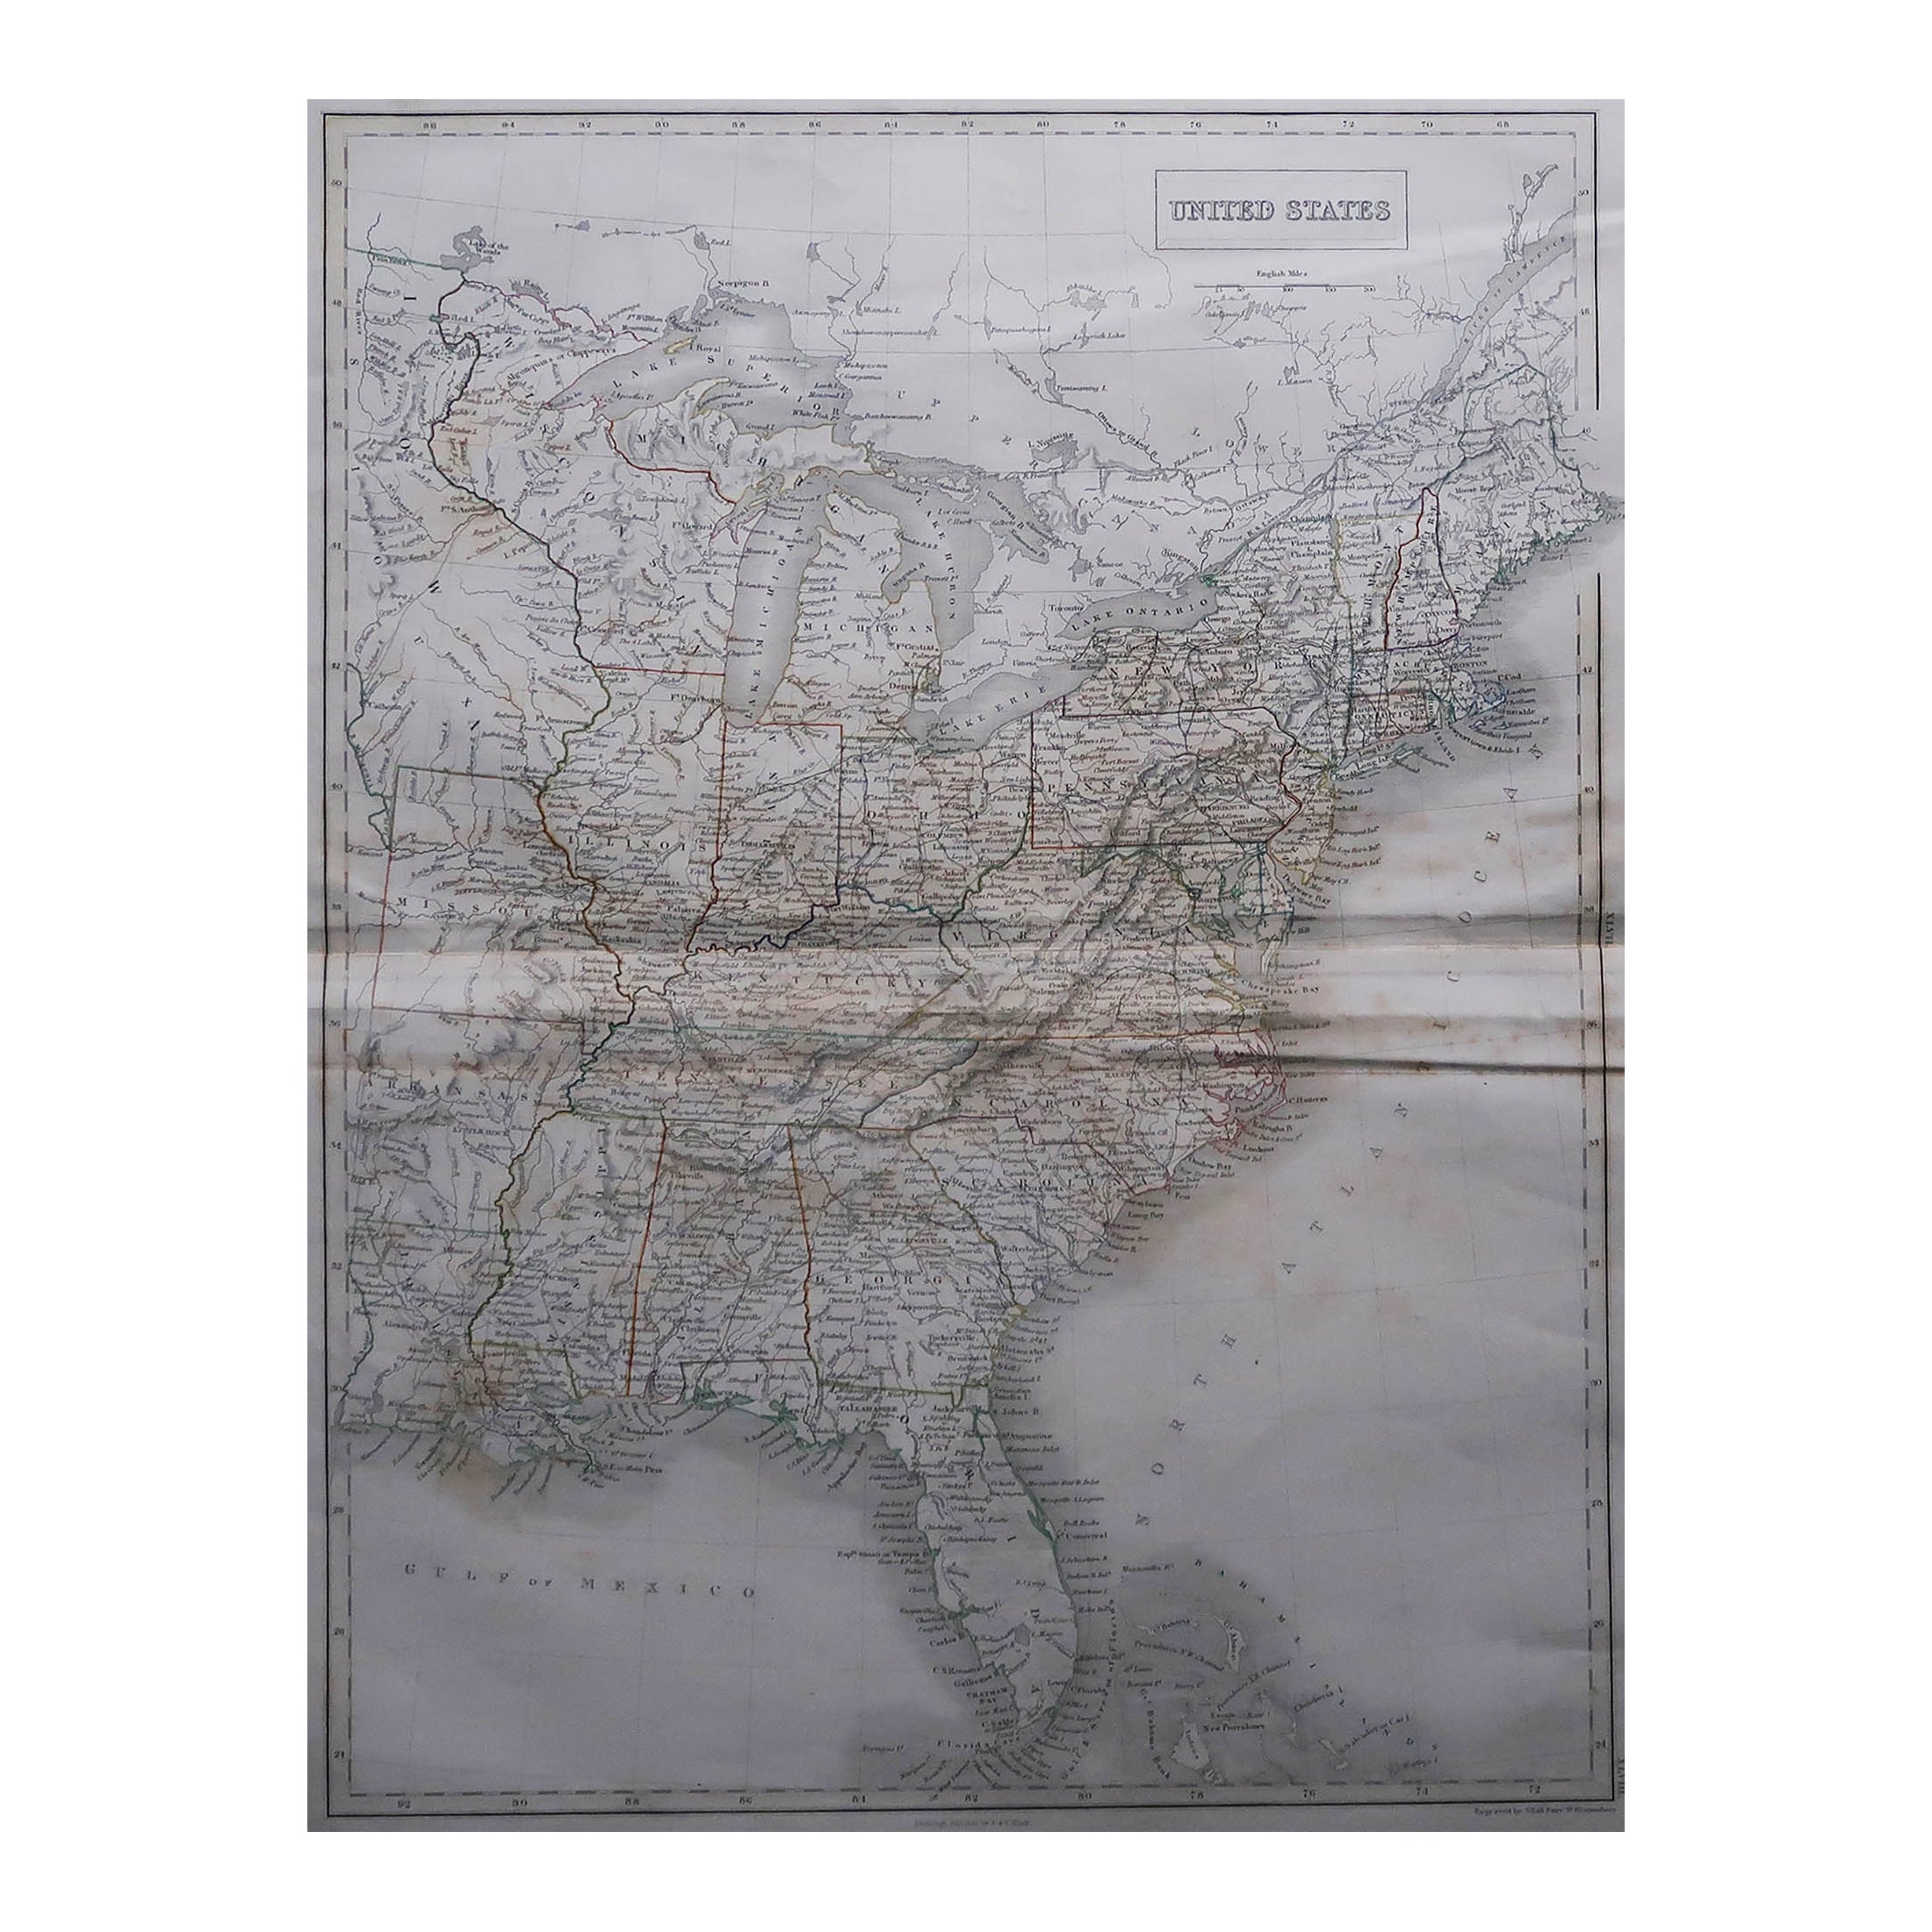 Gran Mapa Antiguo Original de Estados Unidos por Sidney Hall, 1847